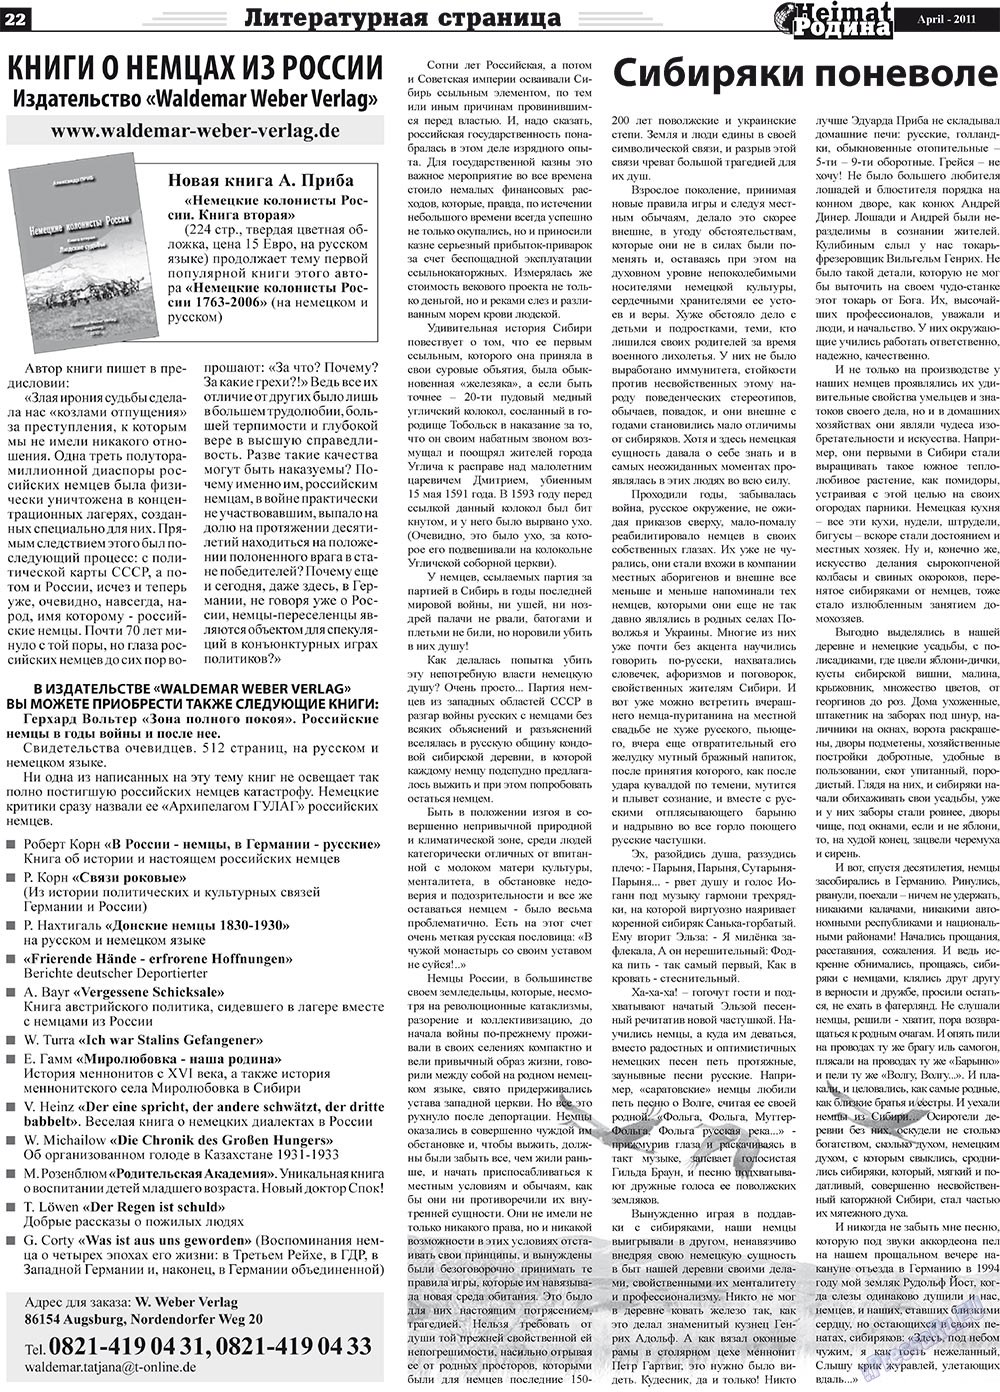 Heimat-Родина (газета). 2011 год, номер 4, стр. 22